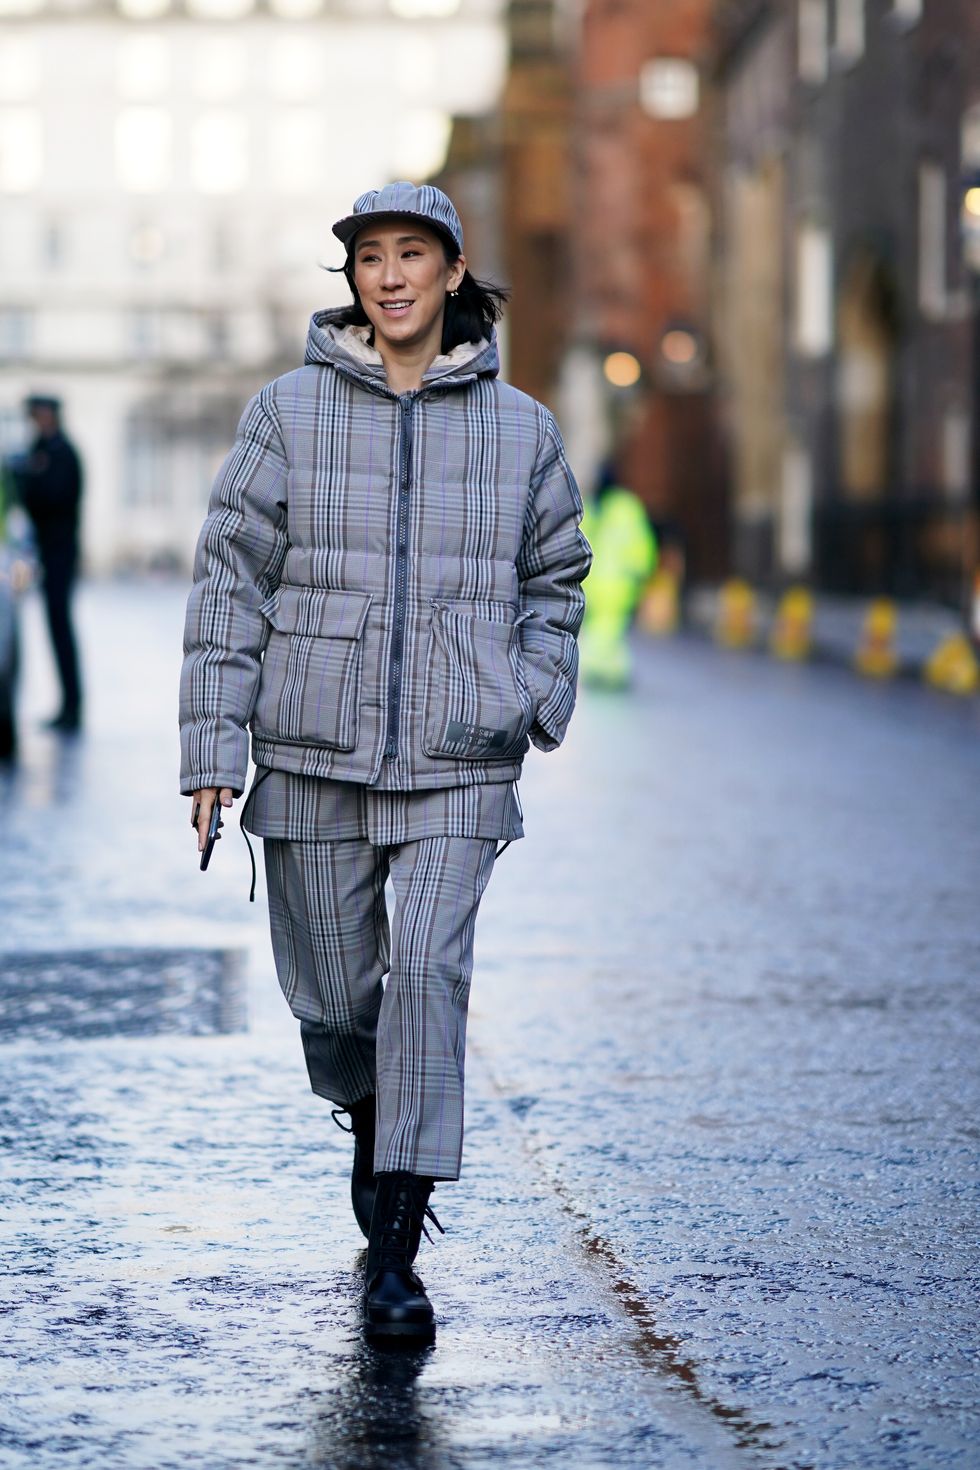 I cappotti a quadri alla London Fashion Week perfetti per la